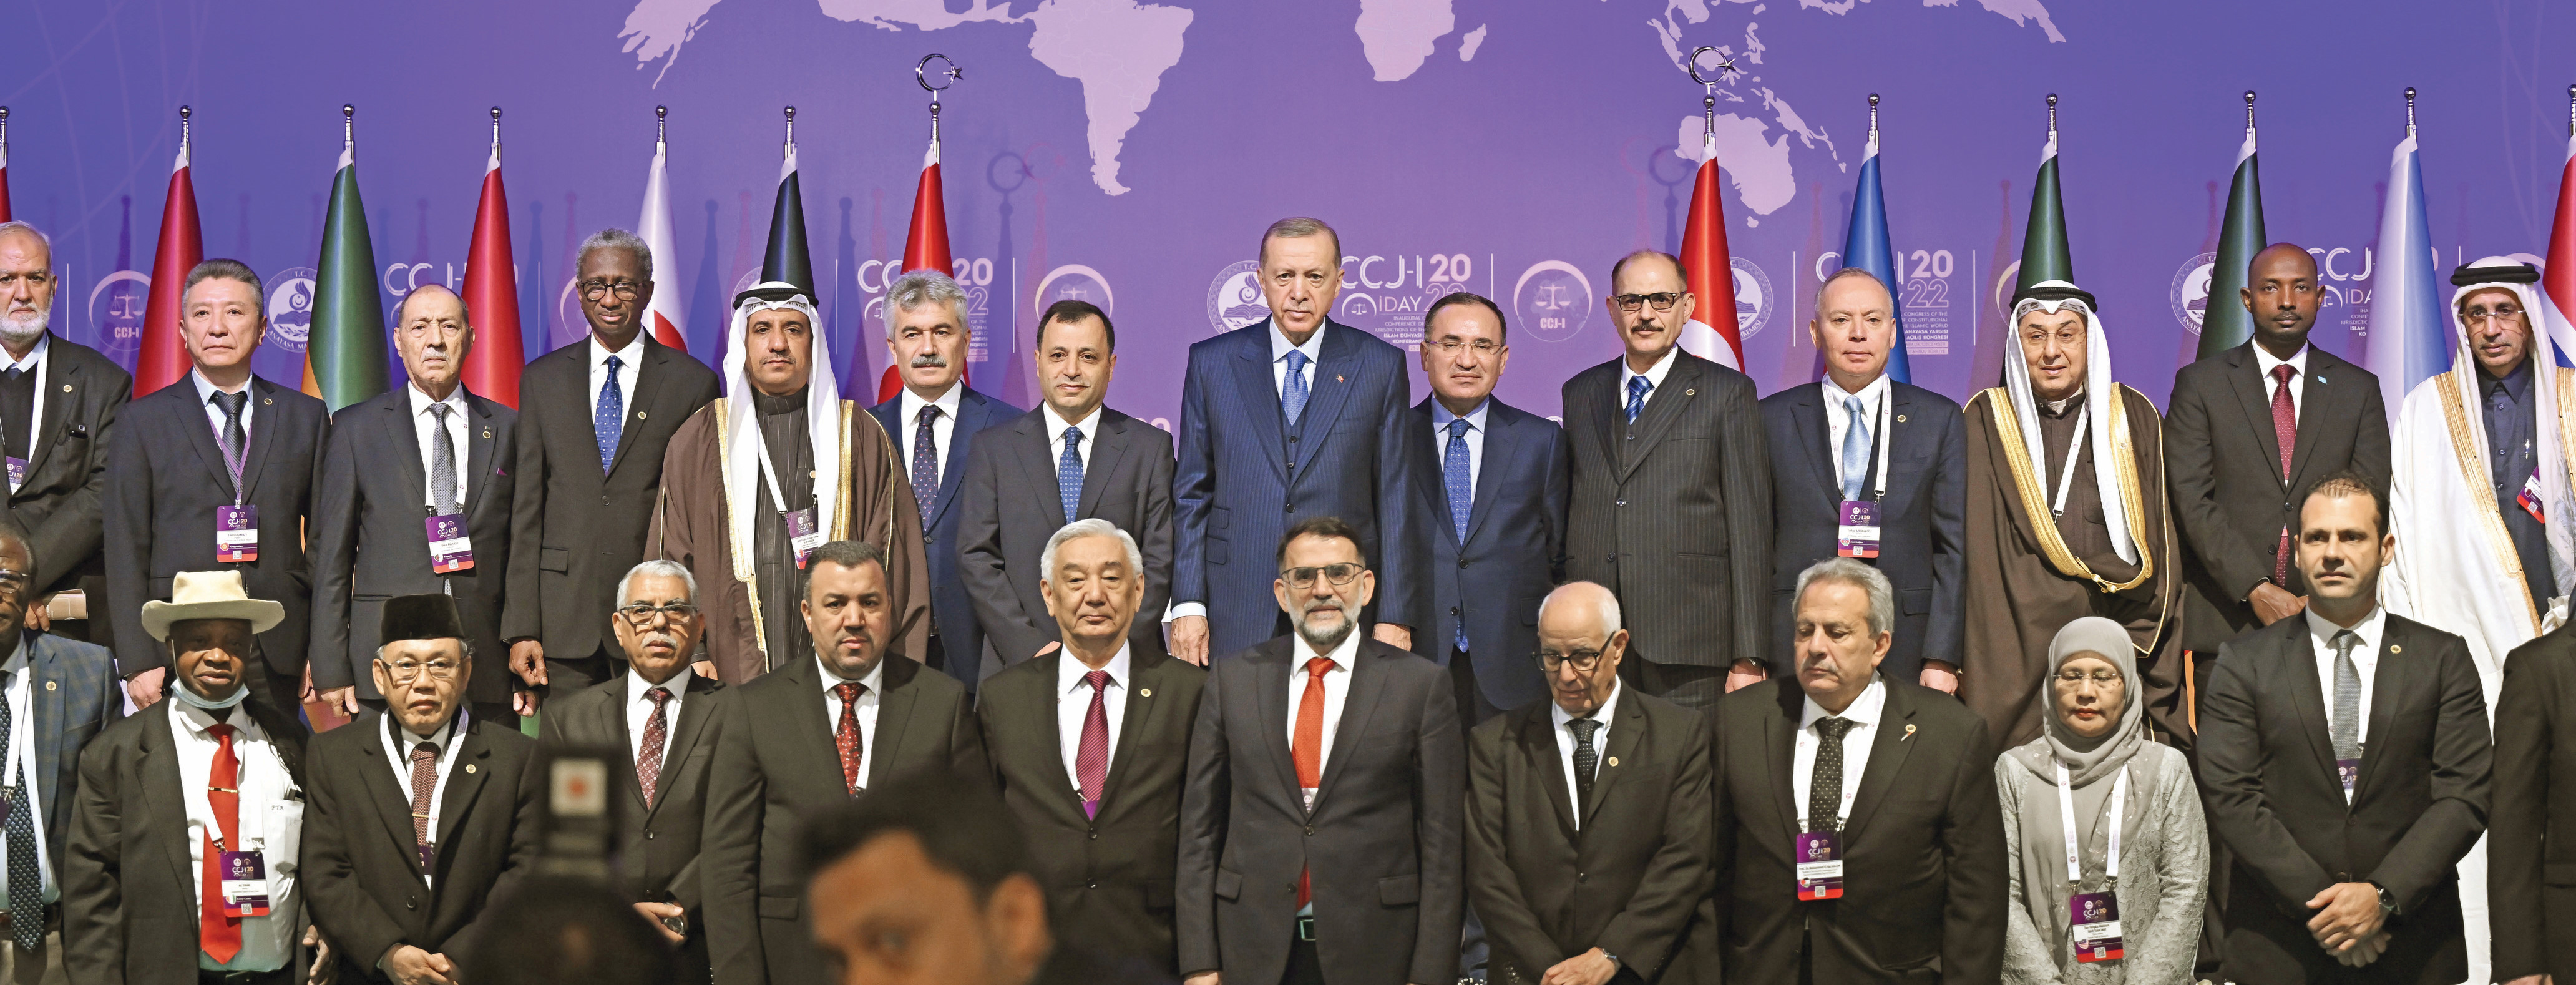 Cumhurbaşkanı Tayyip Erdoğan’ın katıldığı İslam Dünyası Anayasa Yargısı Konferansı Açılış Kongresi’nde Adalet Bakanı Bekir Bozdağ ve Anayasa Mahkemesi Başkanı Zühtü Arslan da yer aldı.